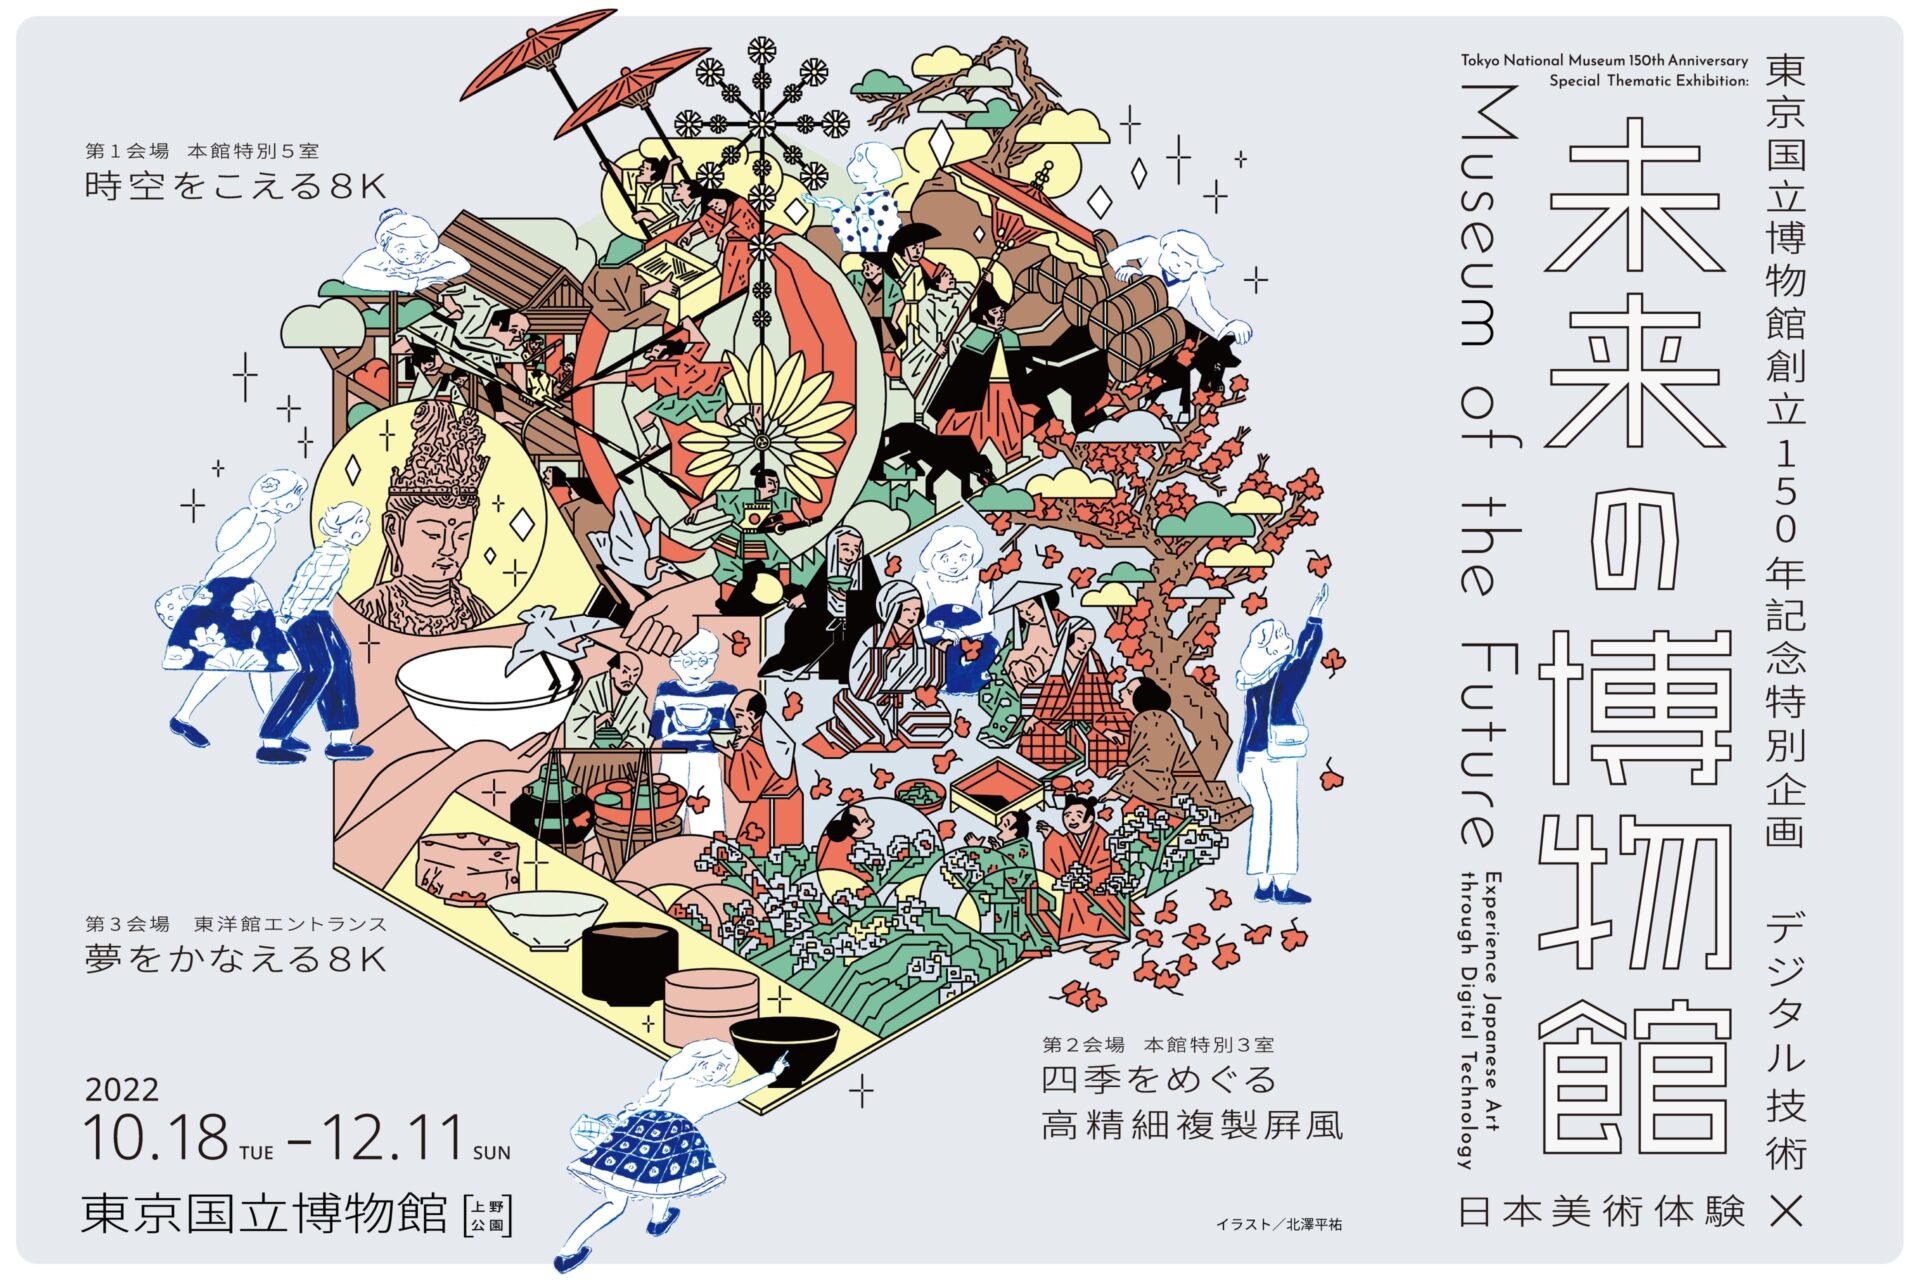 文化財活用センター,東京国立博物館,トーハク,創立150年記念,未来の